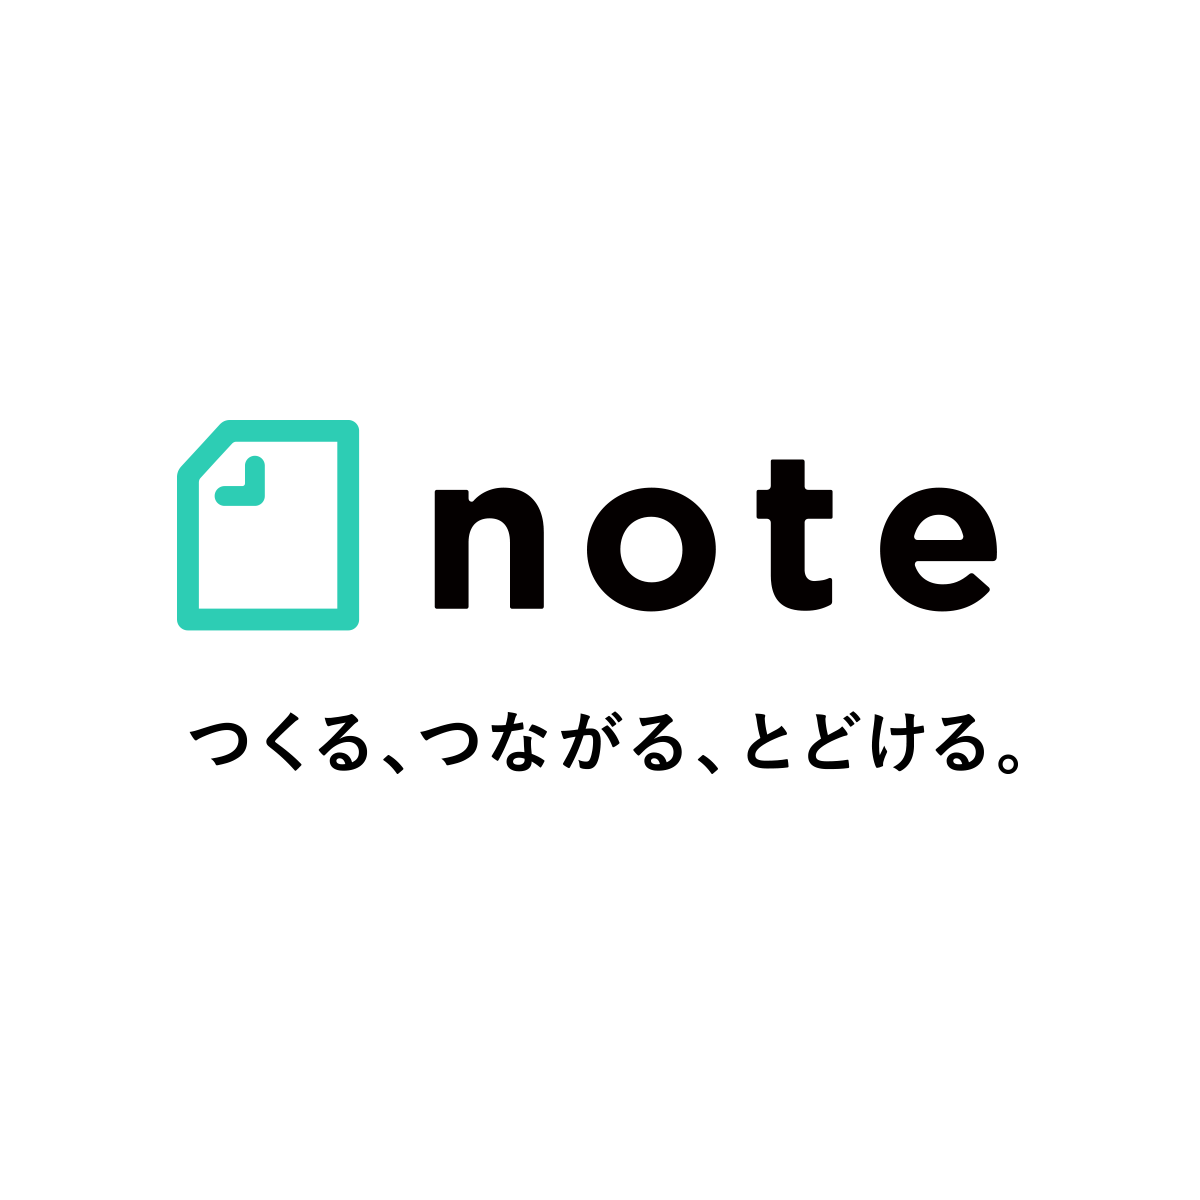 「note」の画像検索結果